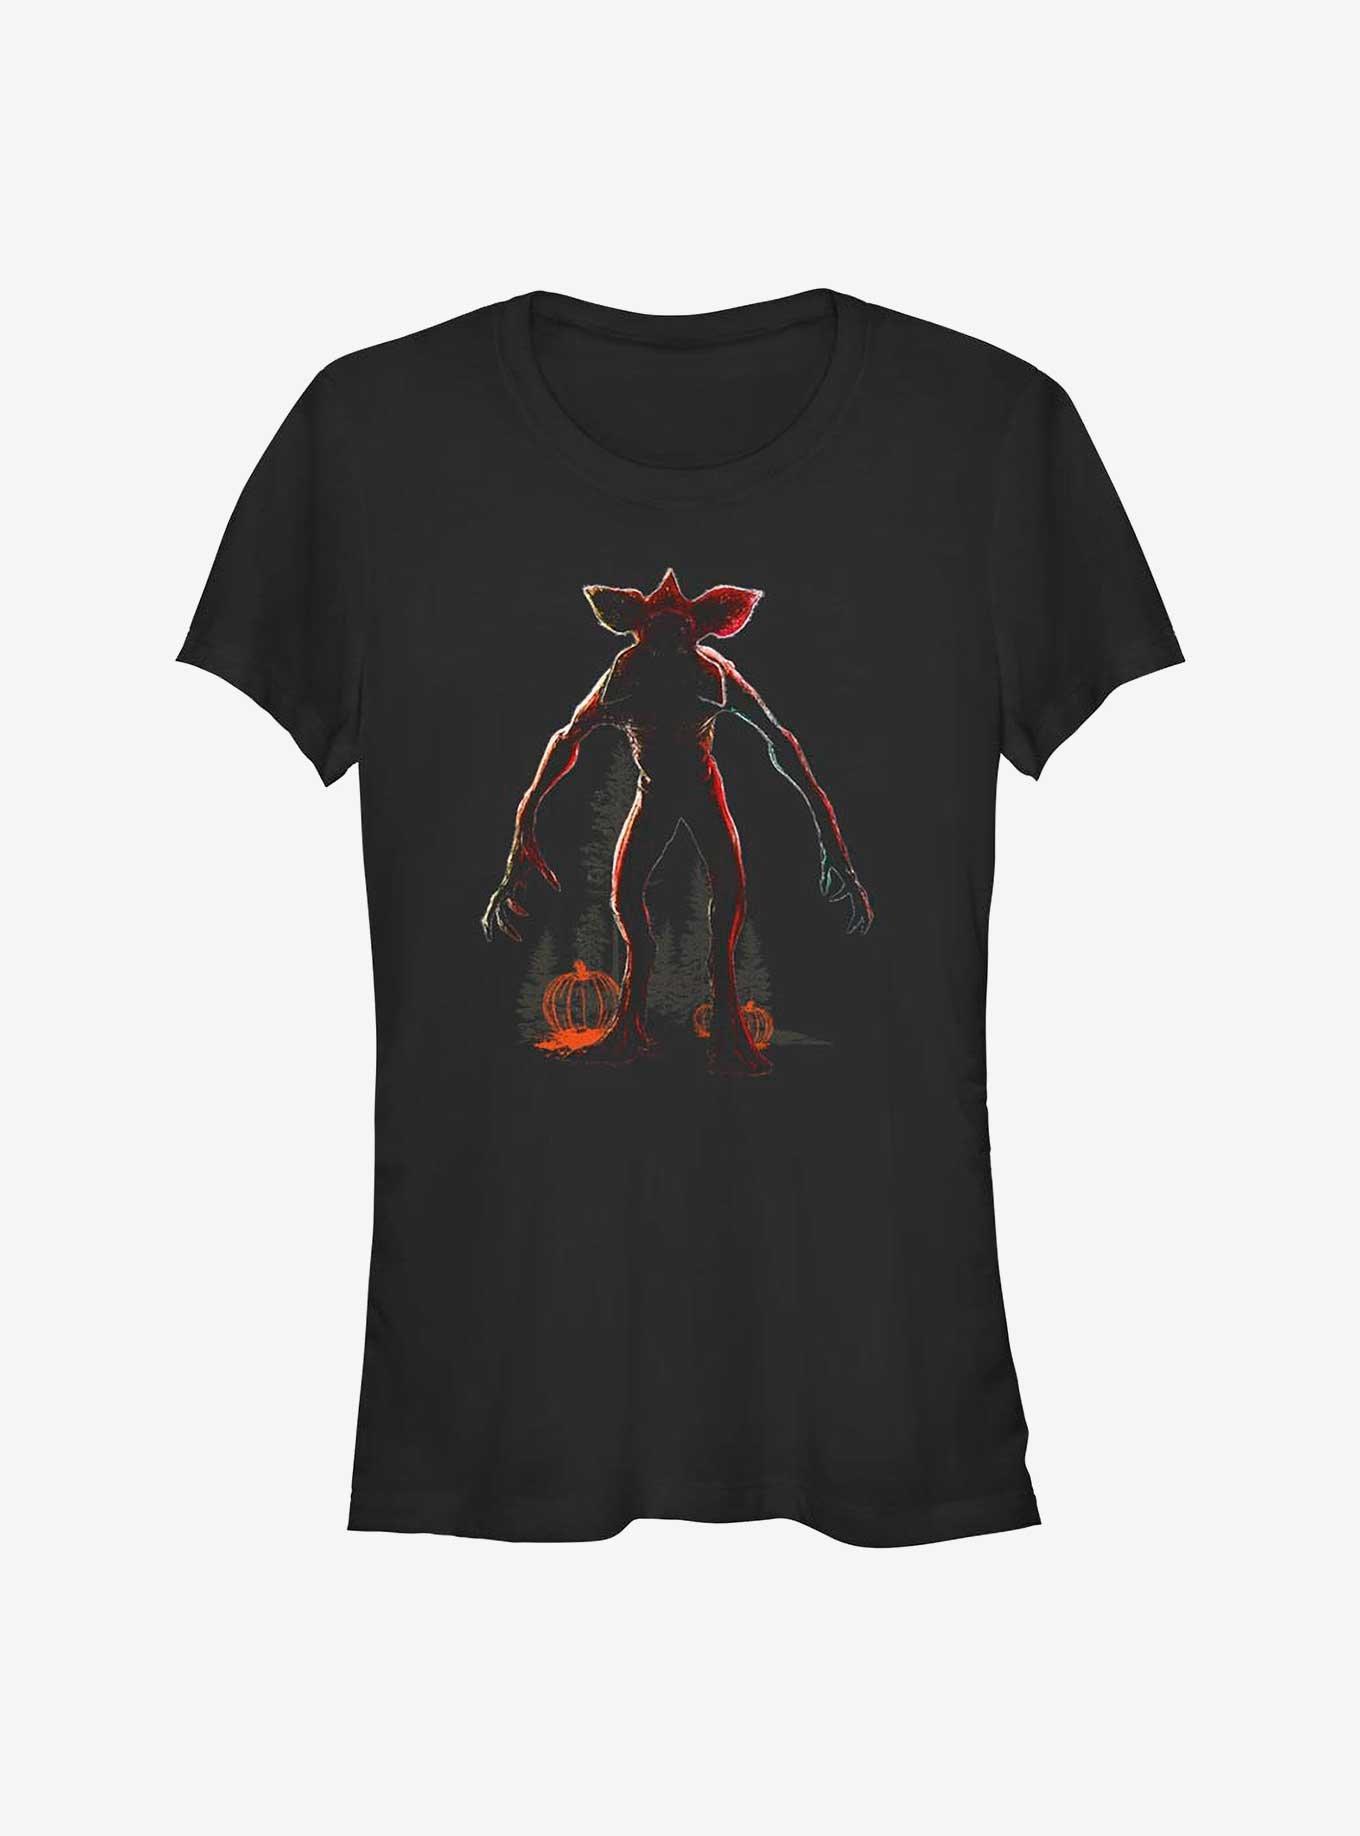 Stranger Things Demogorgon Silhouette Girls T-Shirt, BLACK, hi-res